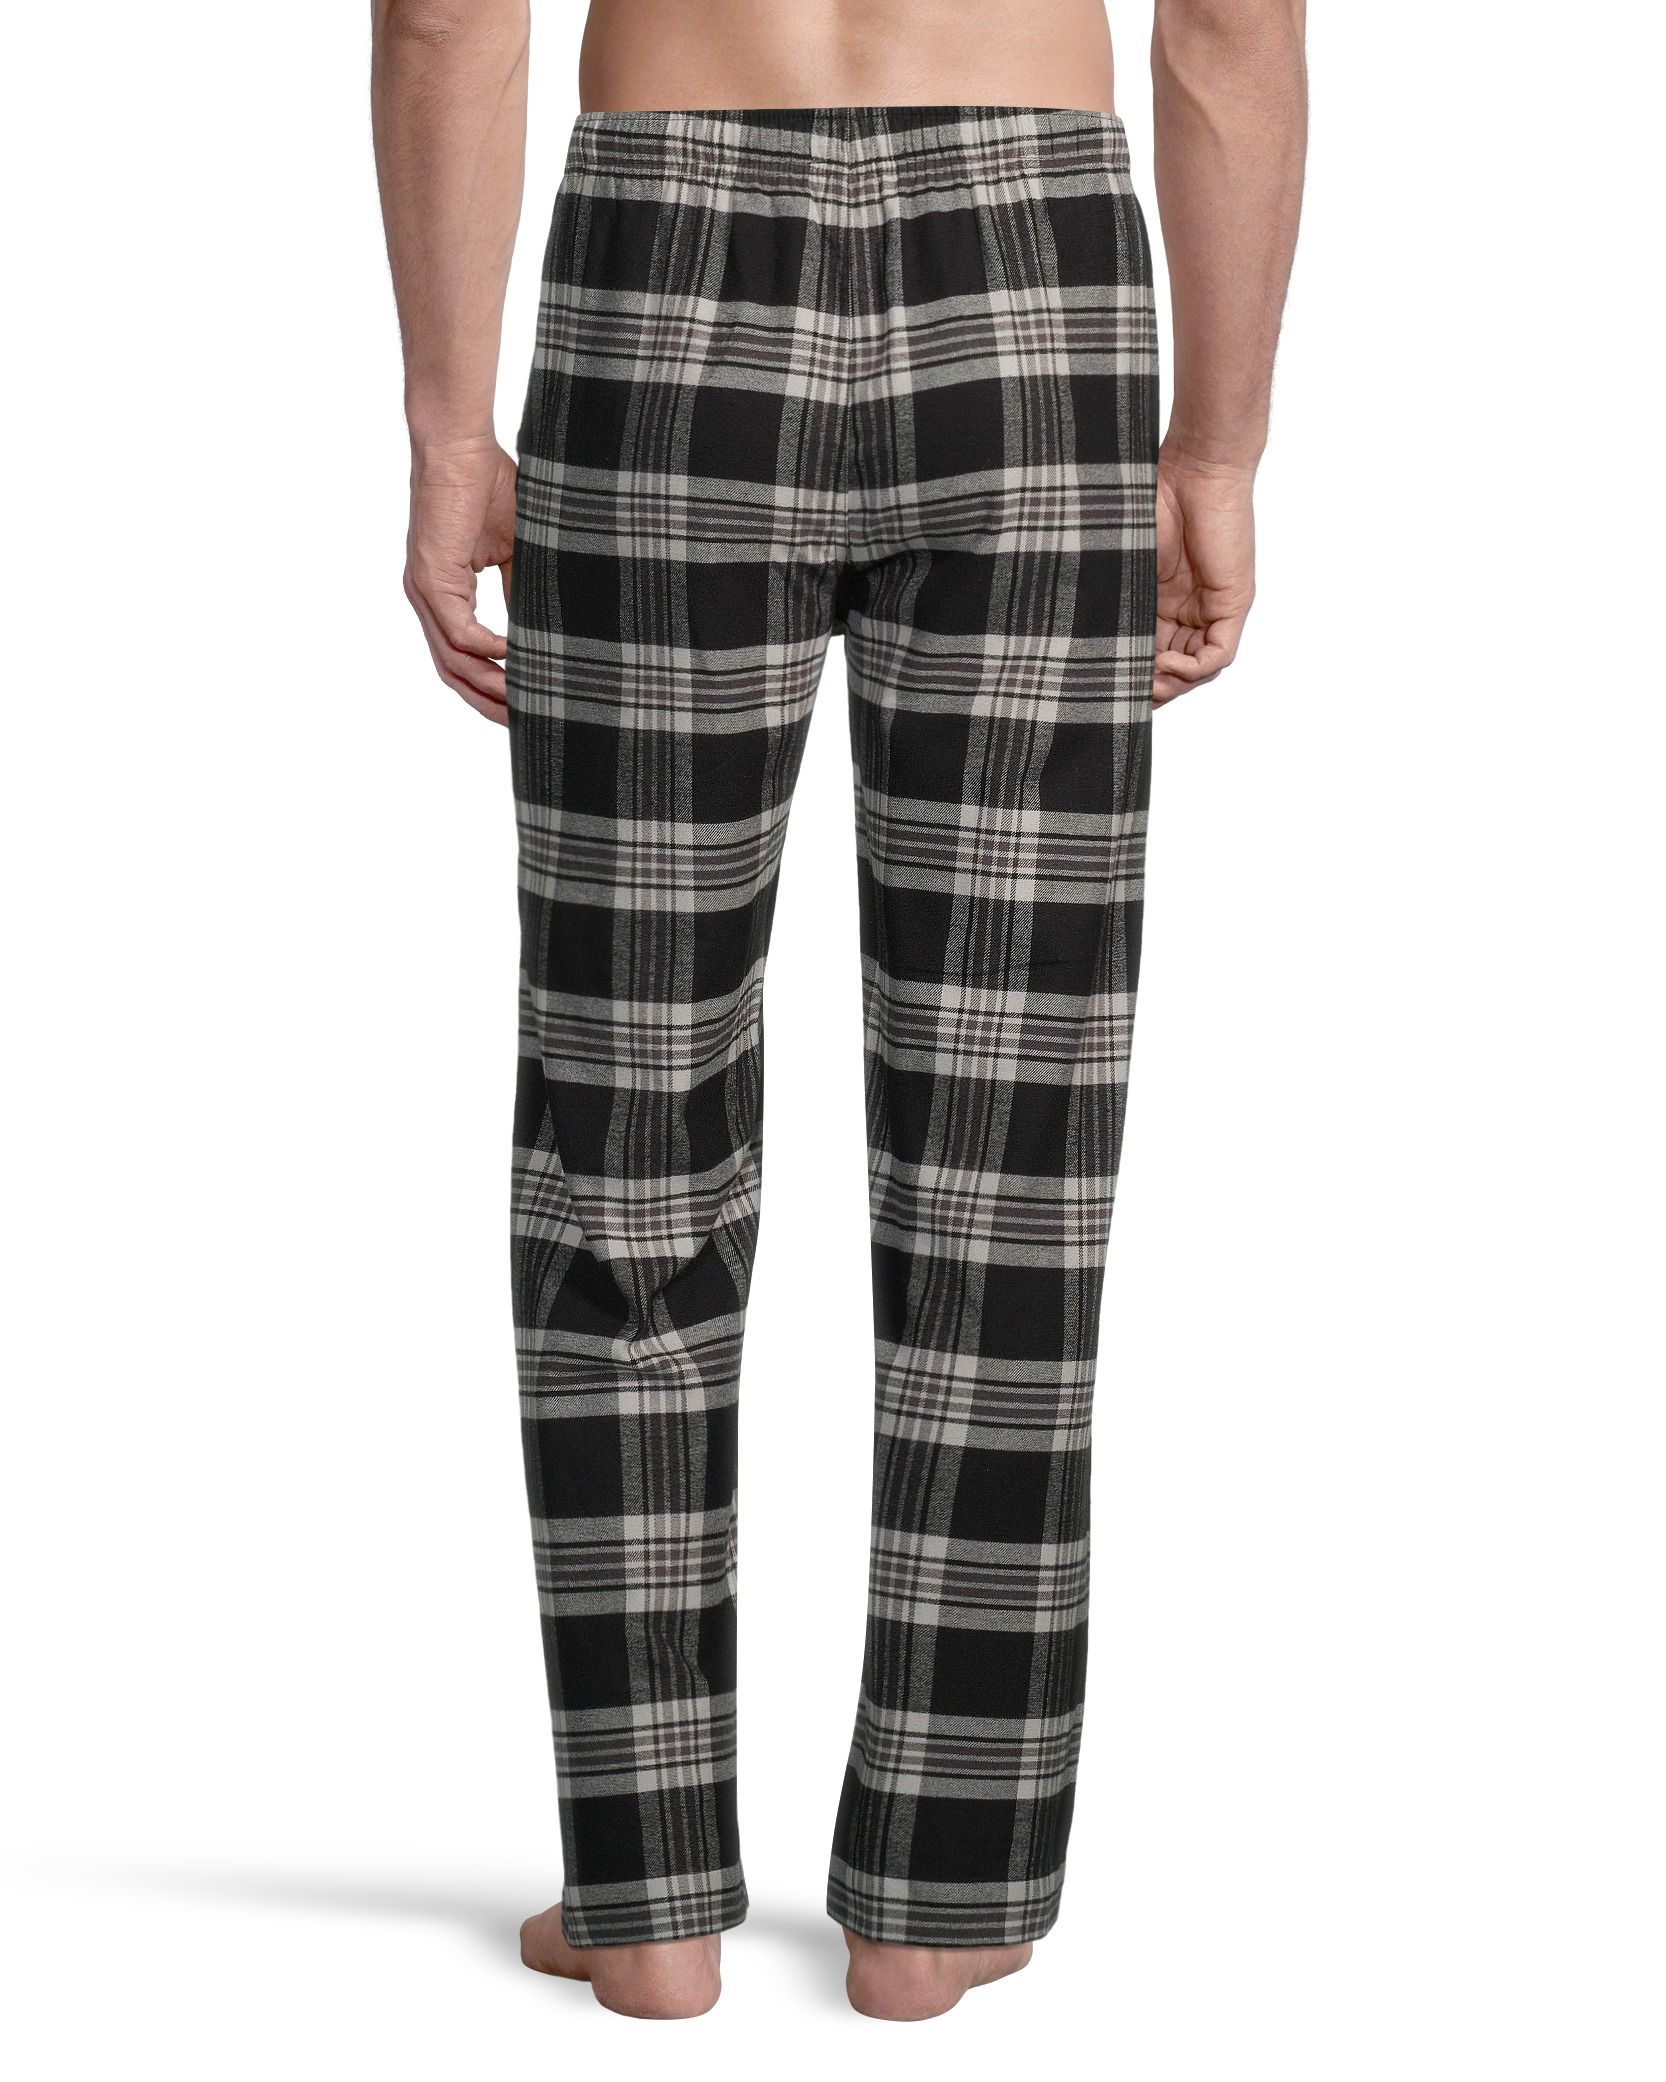 Black Red Plaid Mens Pajama Pant, Straight-fit Lounge Pajama